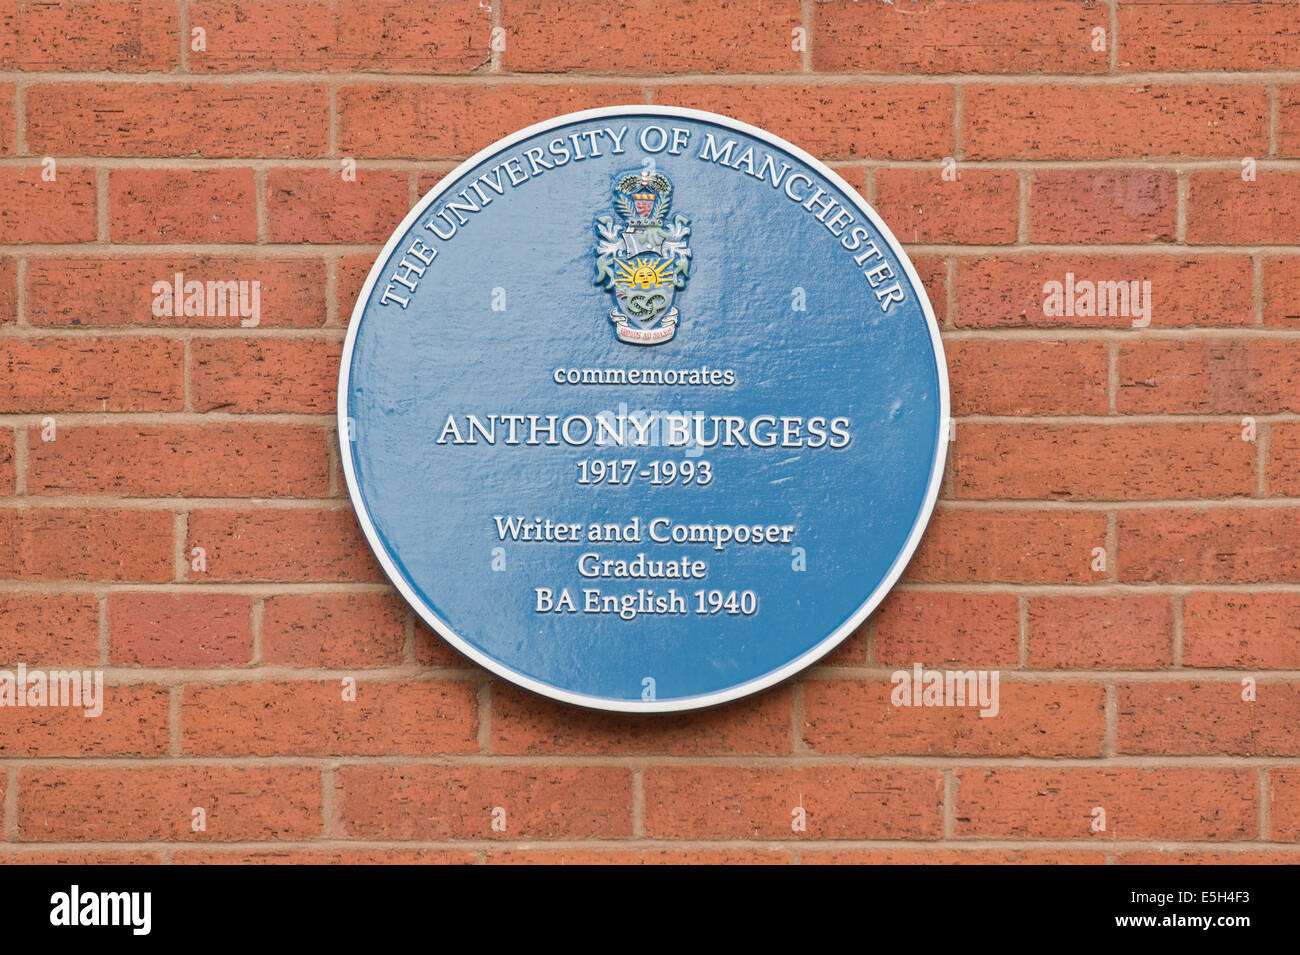 Una placa para conmemorar el escritor Anthony Burgess, ubicado en el campus de la Universidad de Oxford Road (fuera del área) en Manchester. Foto de stock